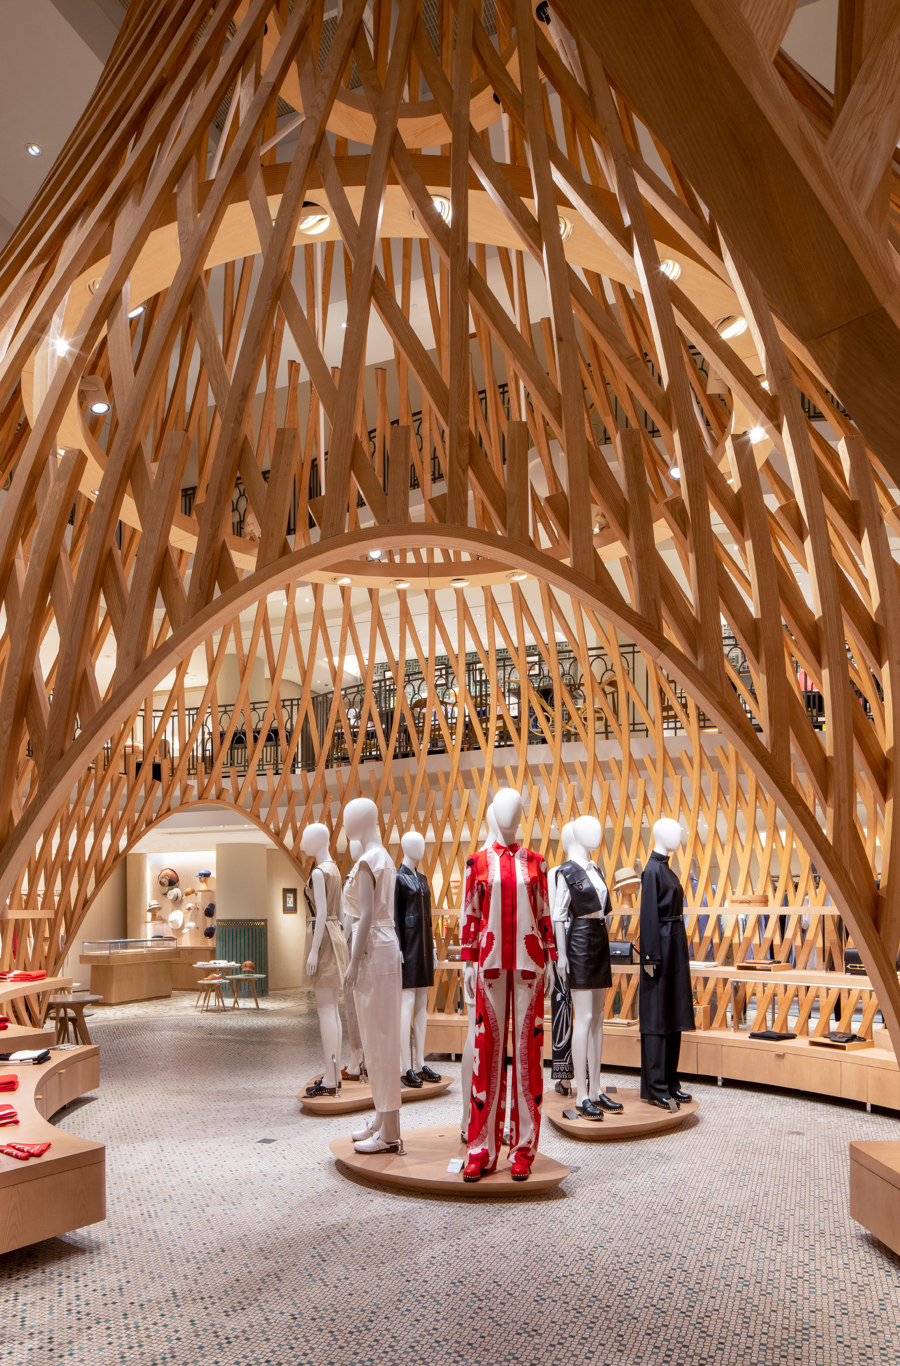 Hermès Rive Gauche by RDAI | Shop interiors